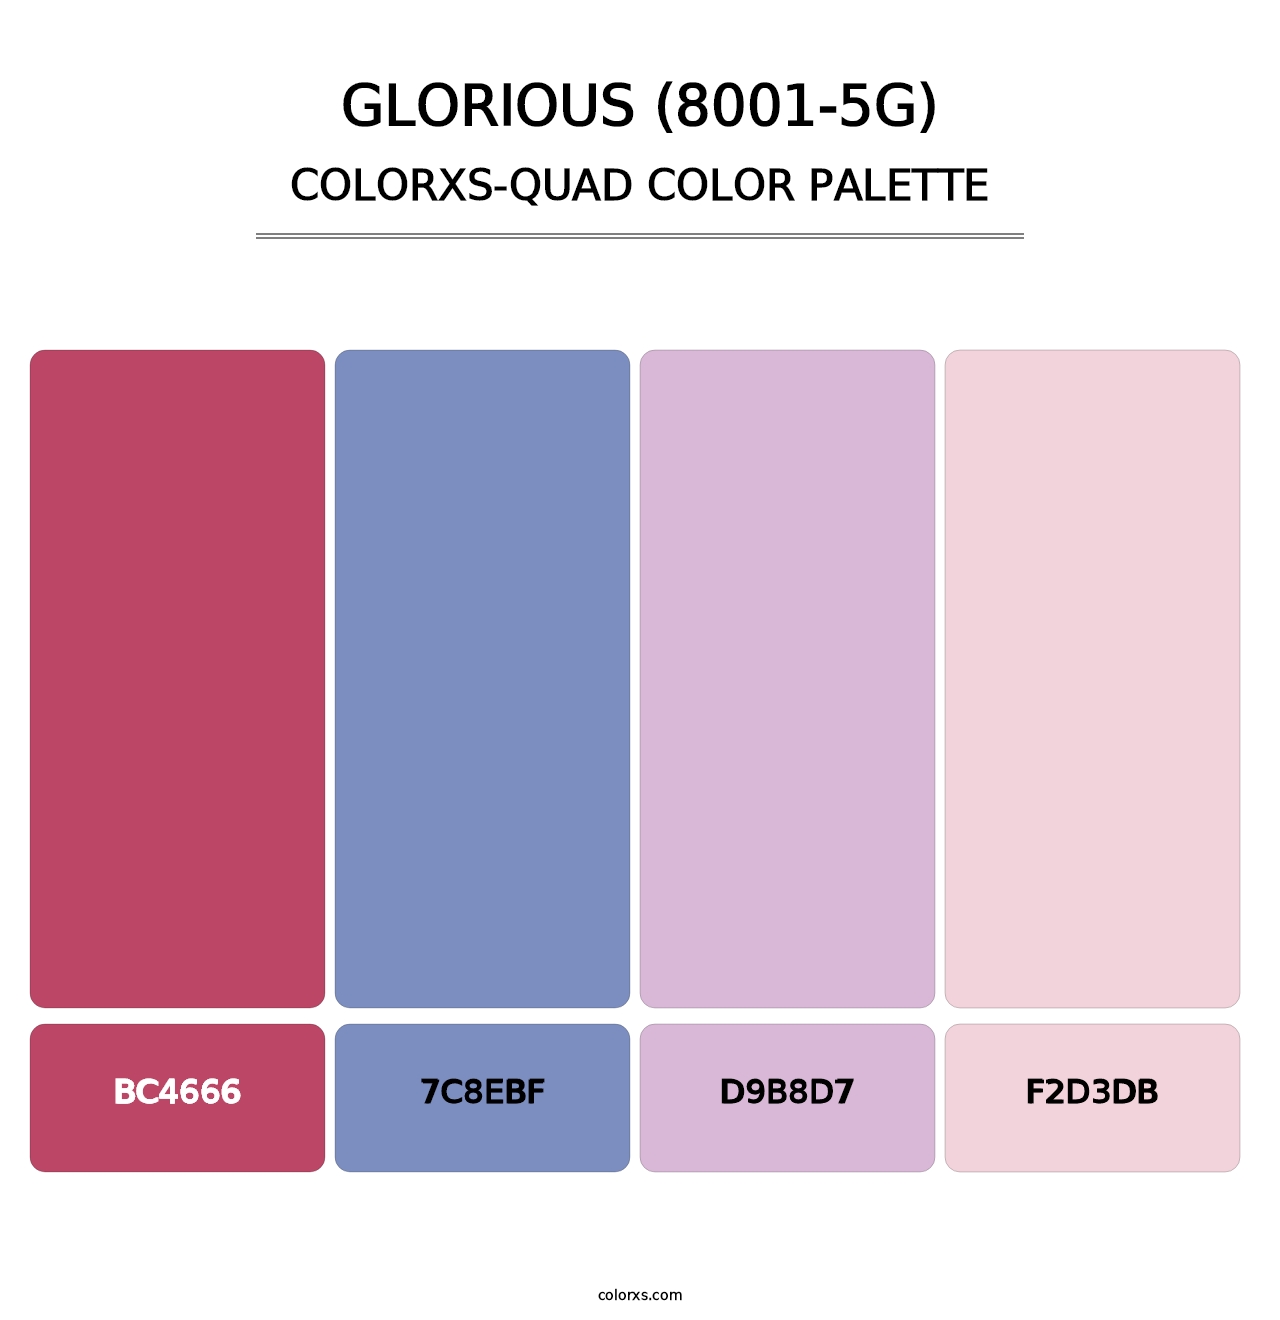 Glorious (8001-5G) - Colorxs Quad Palette